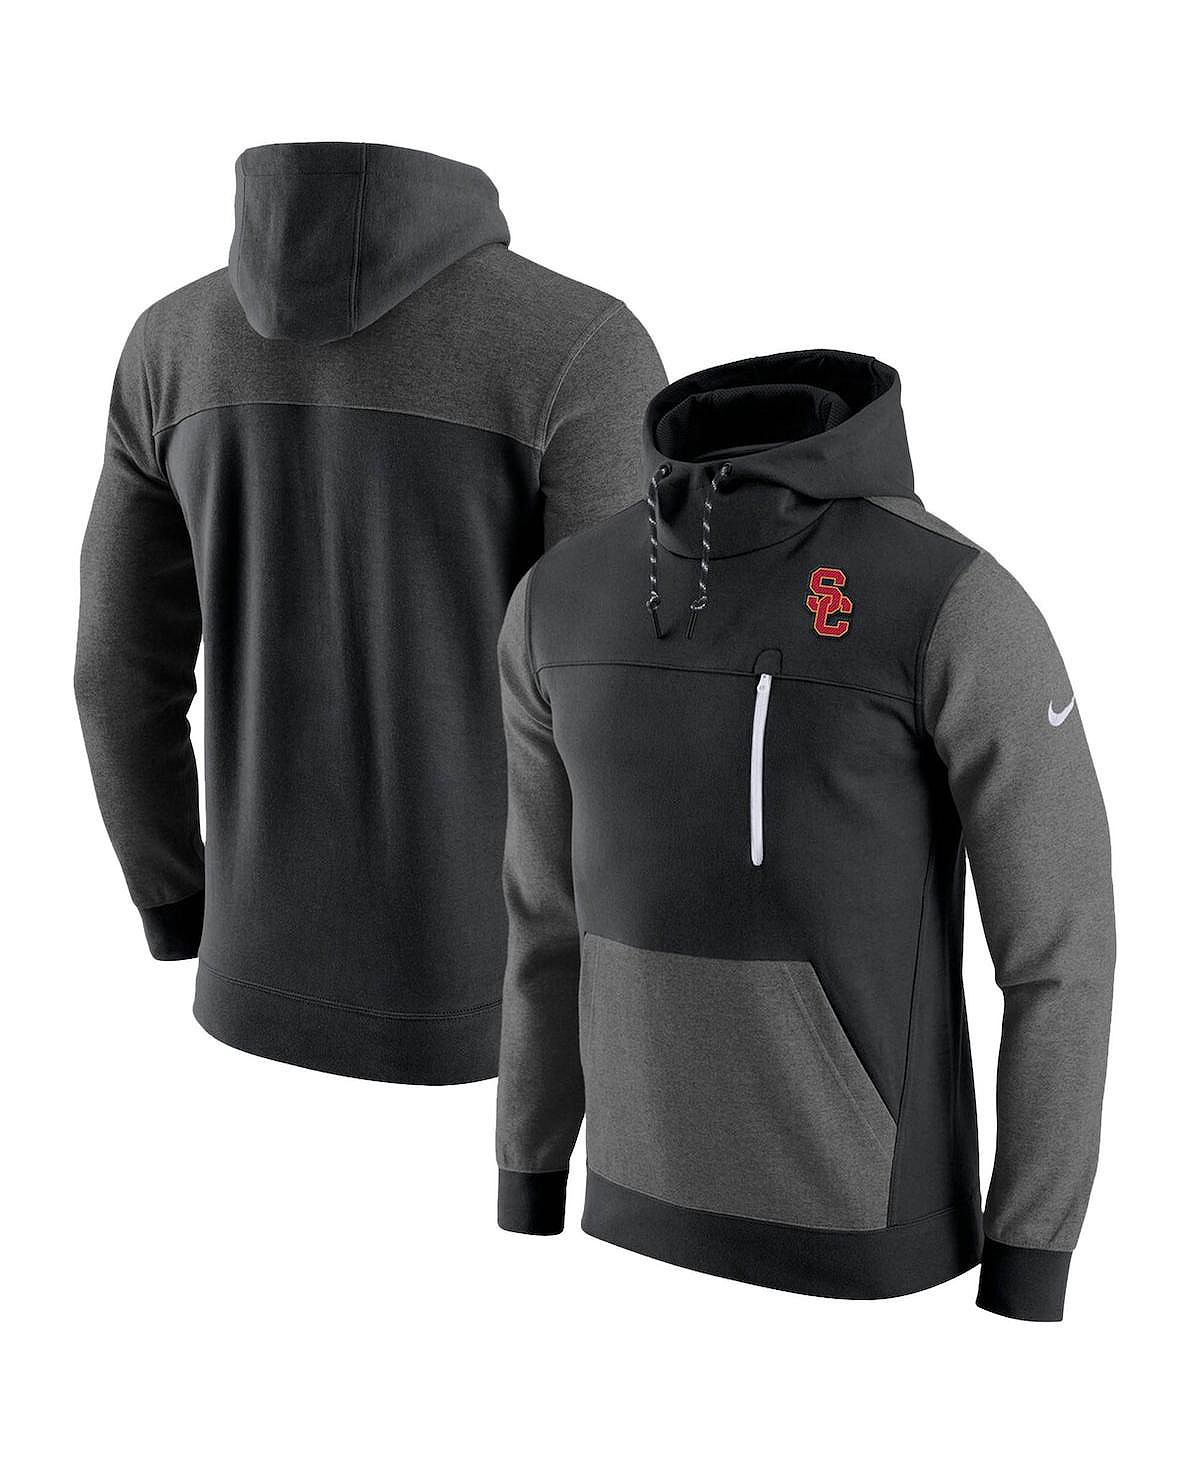 цена Мужской черный пуловер с капюшоном USC Trojans AV-15 2.0 Nike